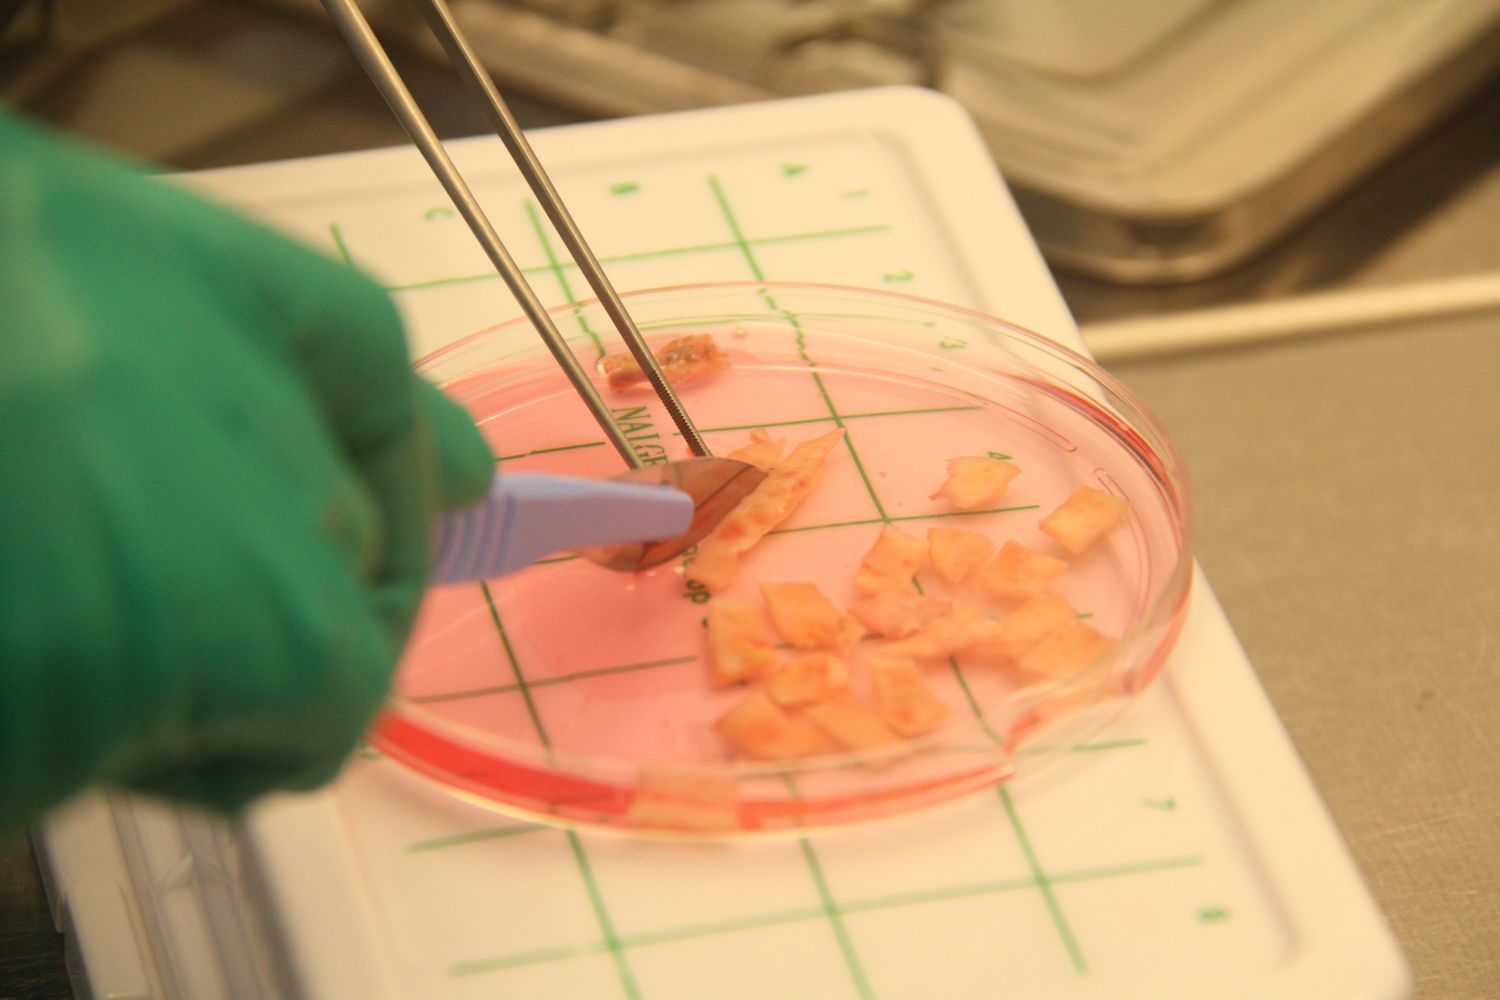 
Traitement du tissu ovarien dans le laboratoire du CRG de l'UZ Brussel